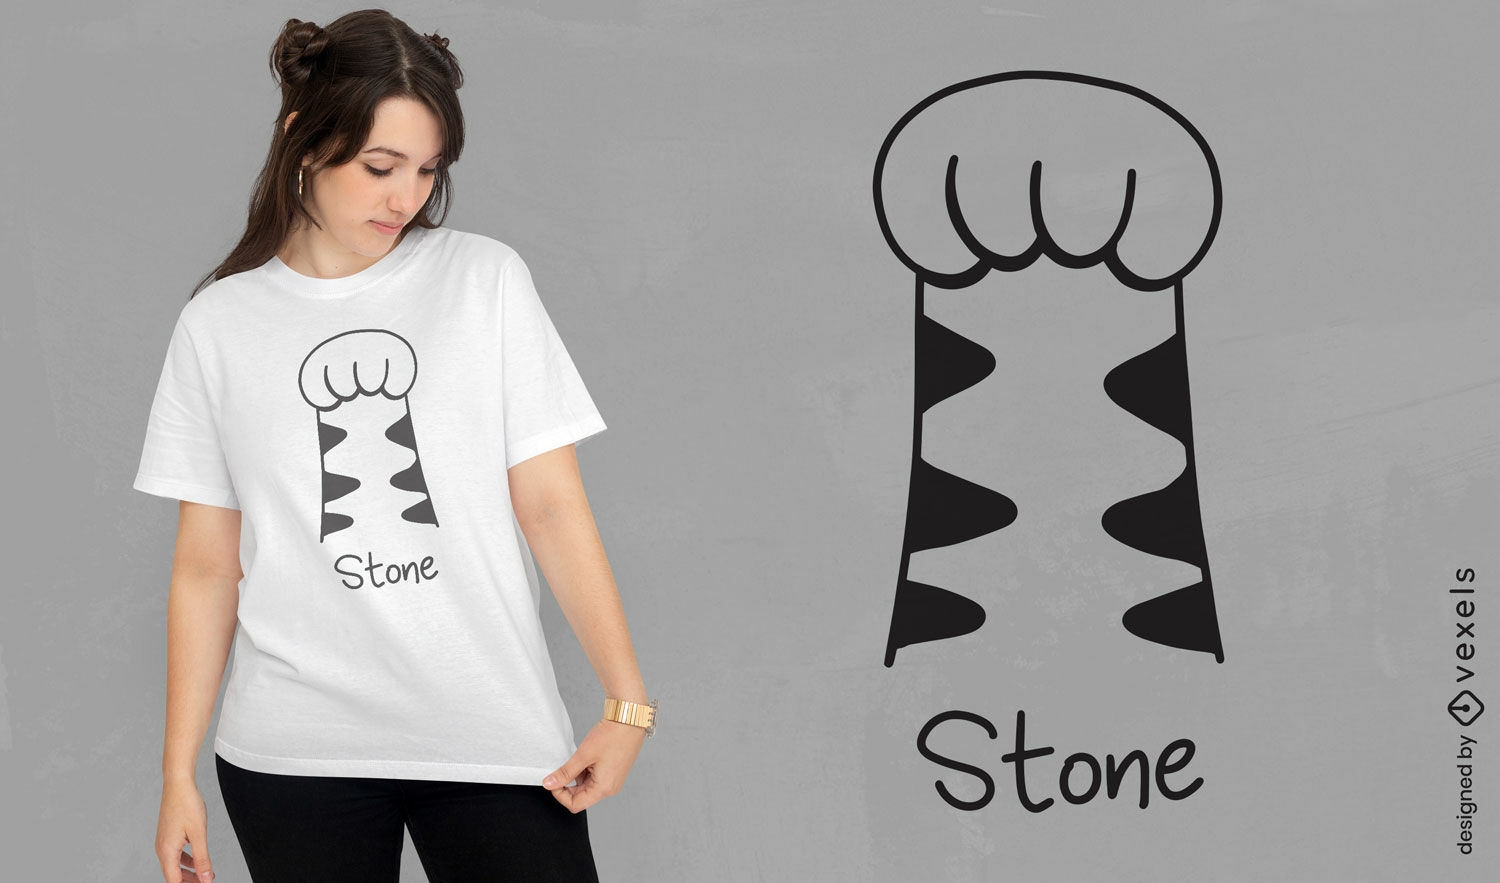 Minimalist stone fist t-shirt design